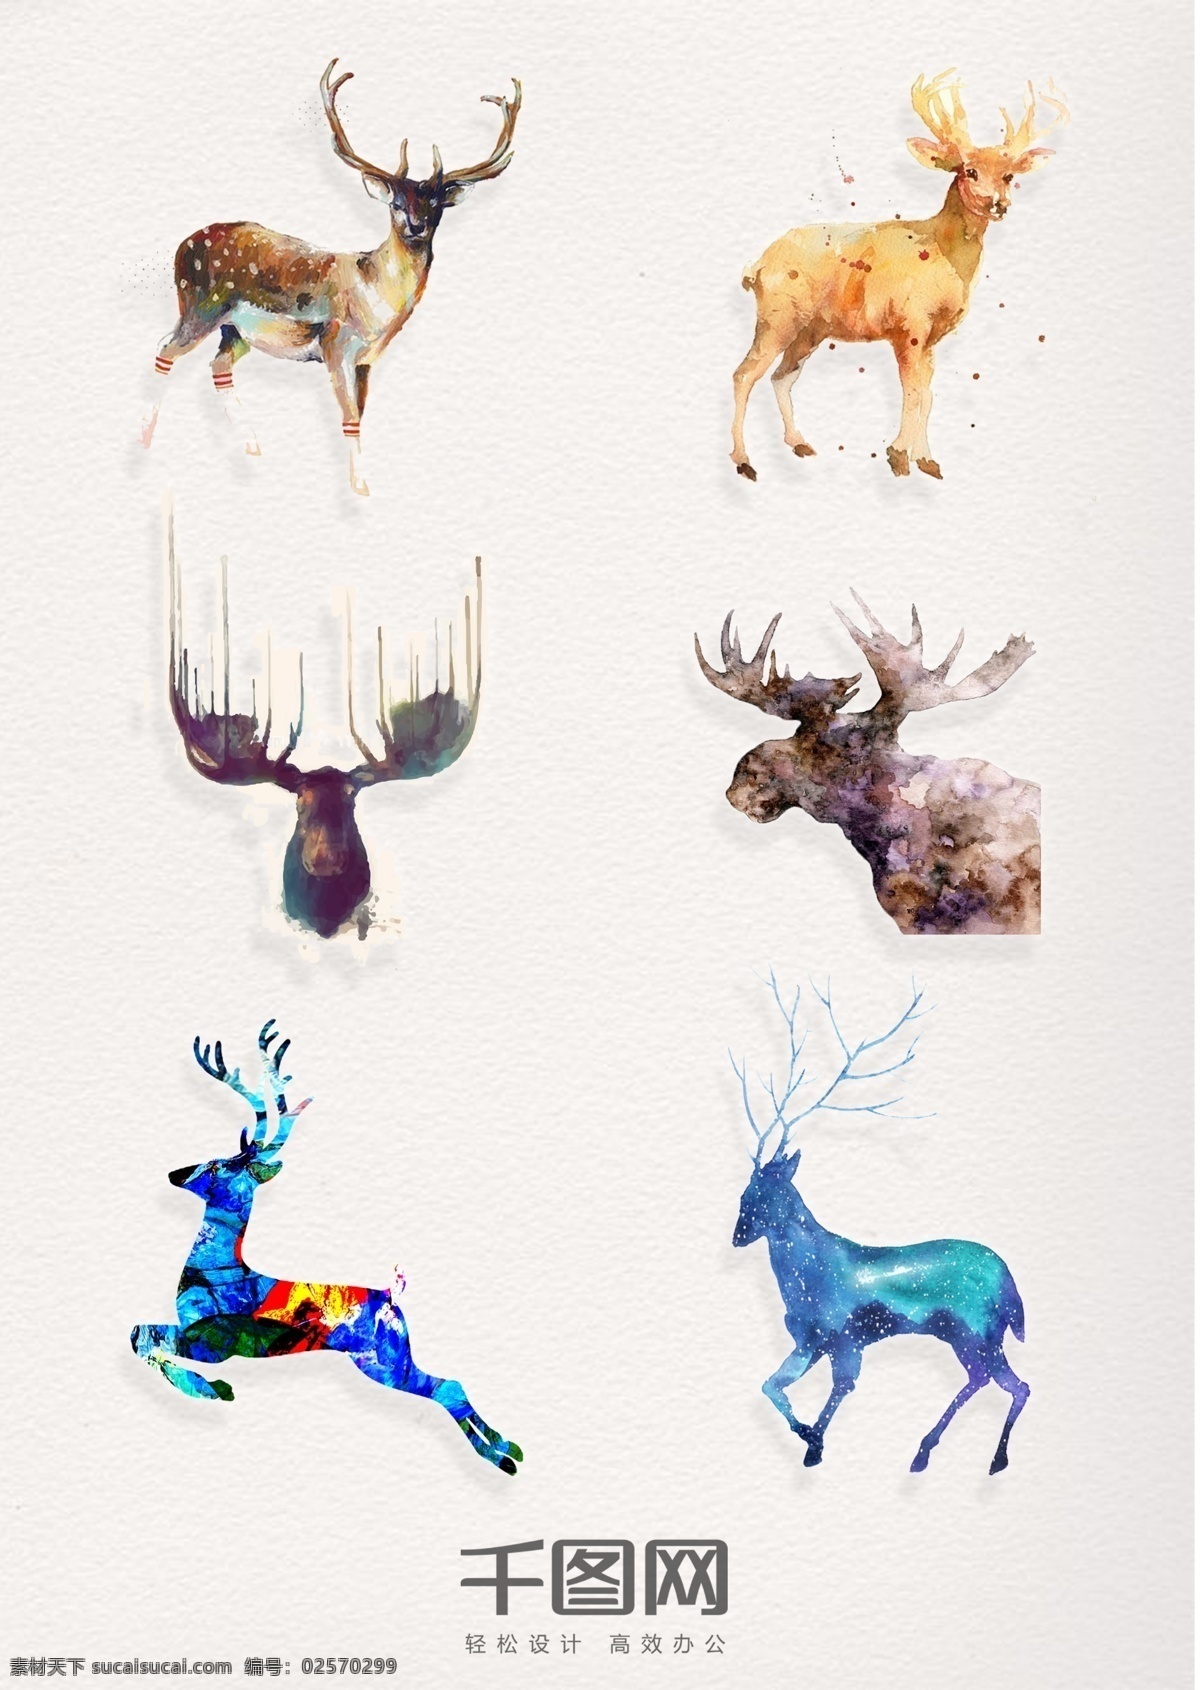 组 精美 水彩 动物 鹿 设计素材 陆地 矢量动物 手绘 装饰 插画 psd素材 小鹿 奔跑